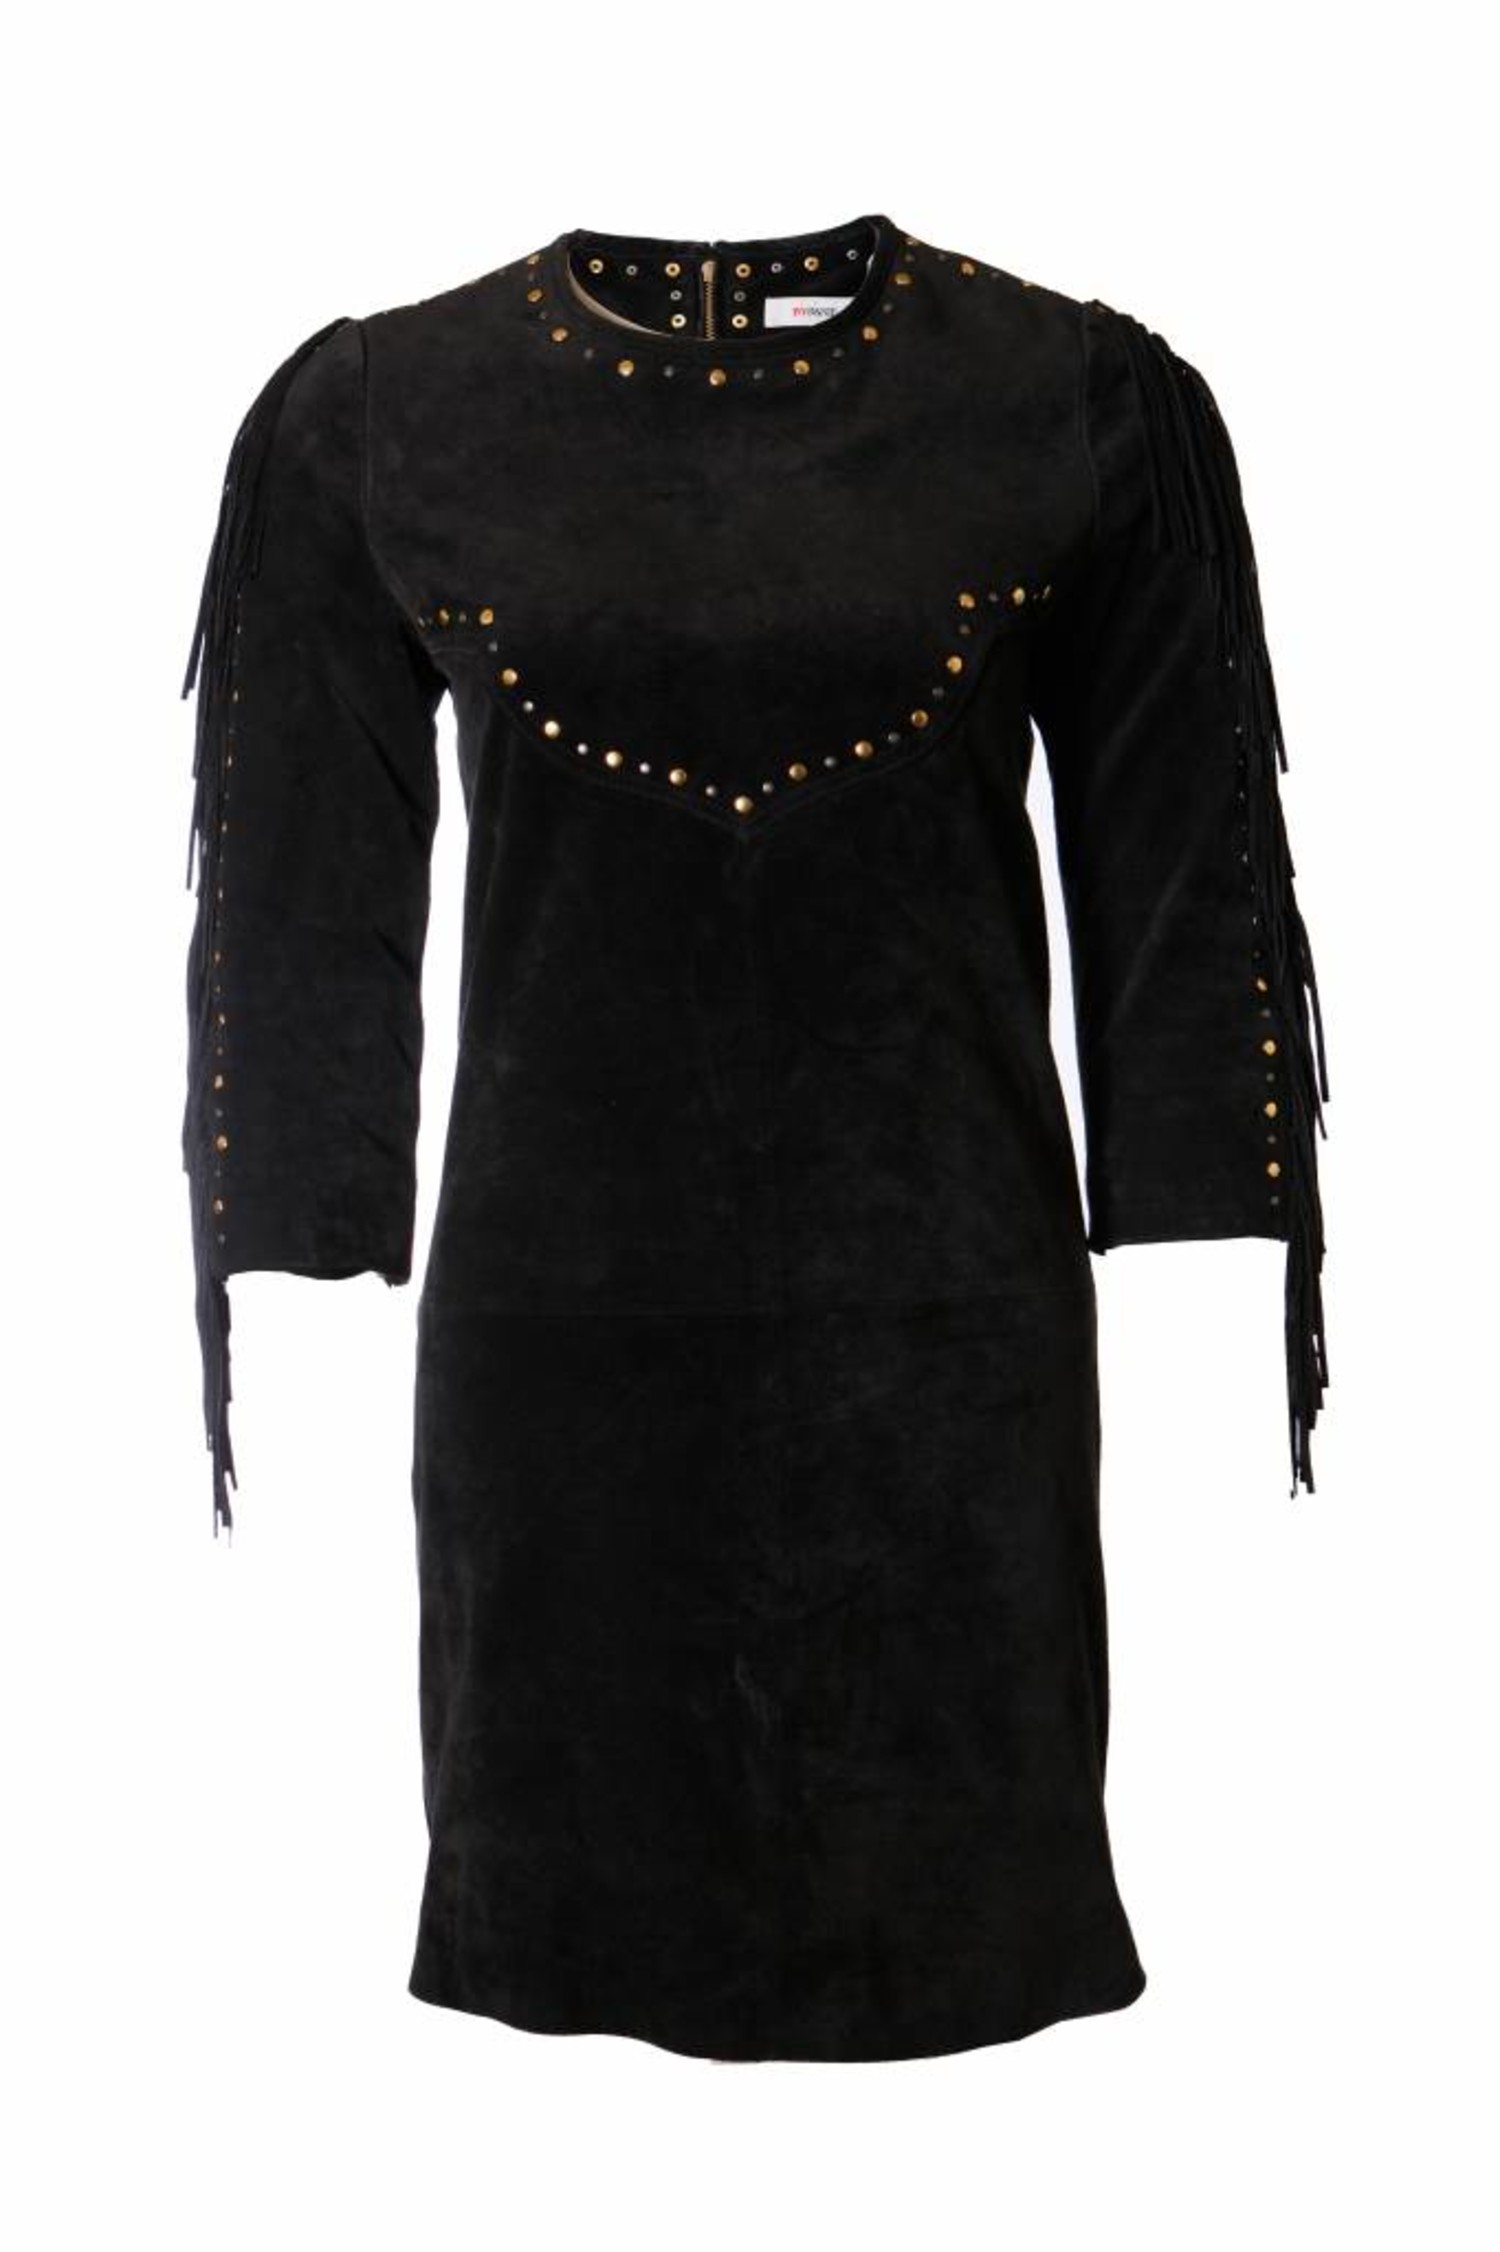 capaciteit een keer water ByDanie, zwart suede jurk met franjes en studs in maat S. - Unique Designer  Pieces